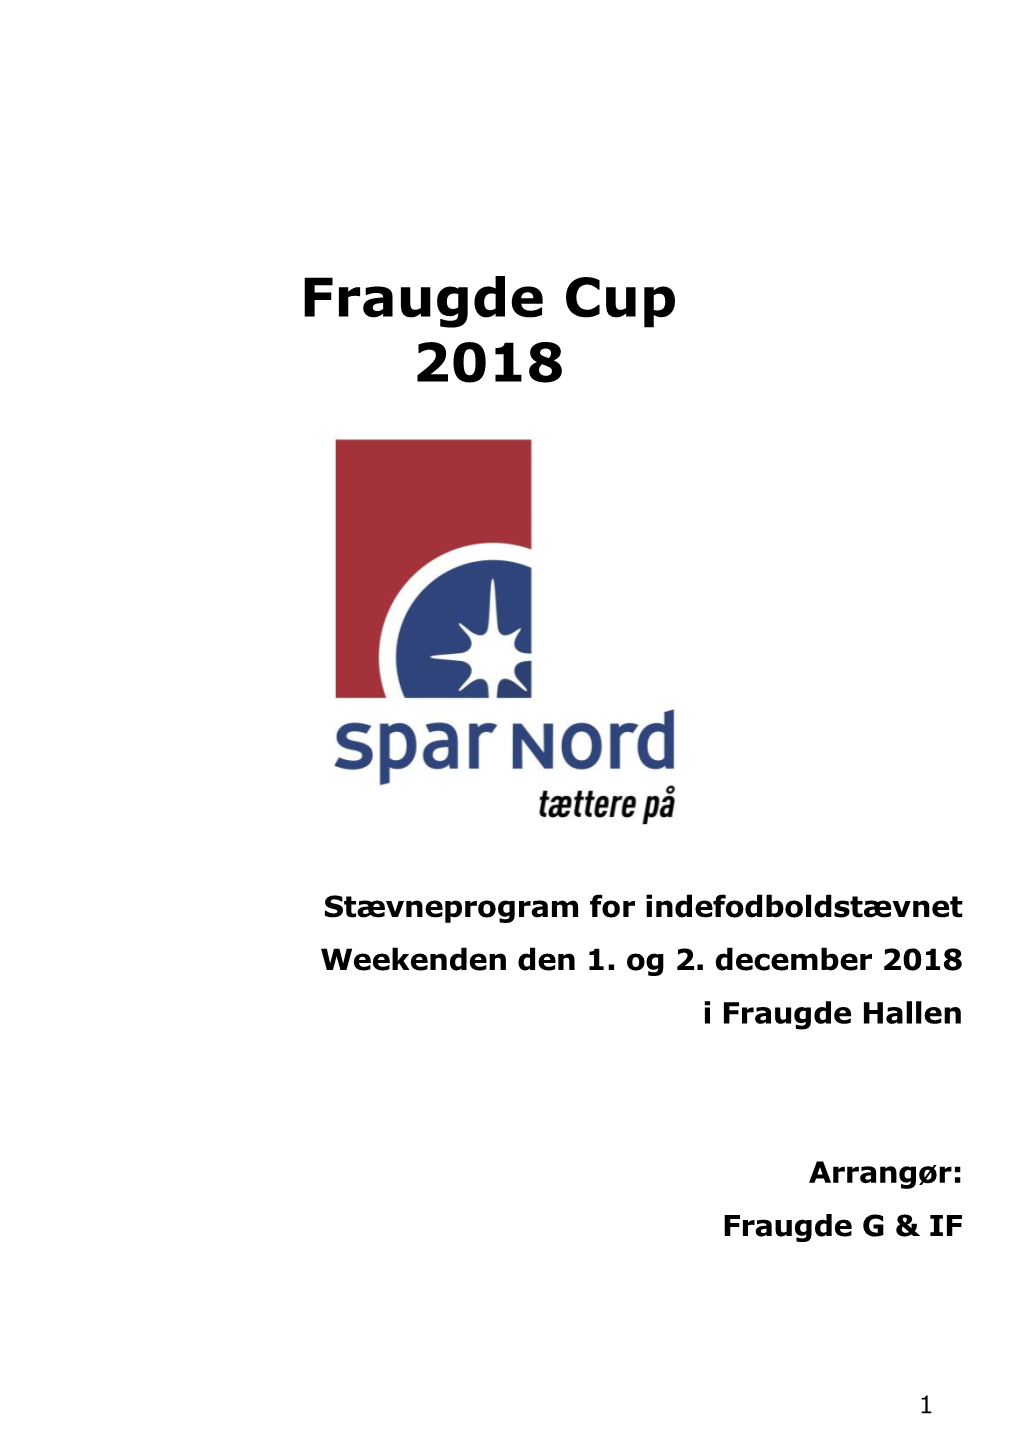 Fraugde Cup 2018